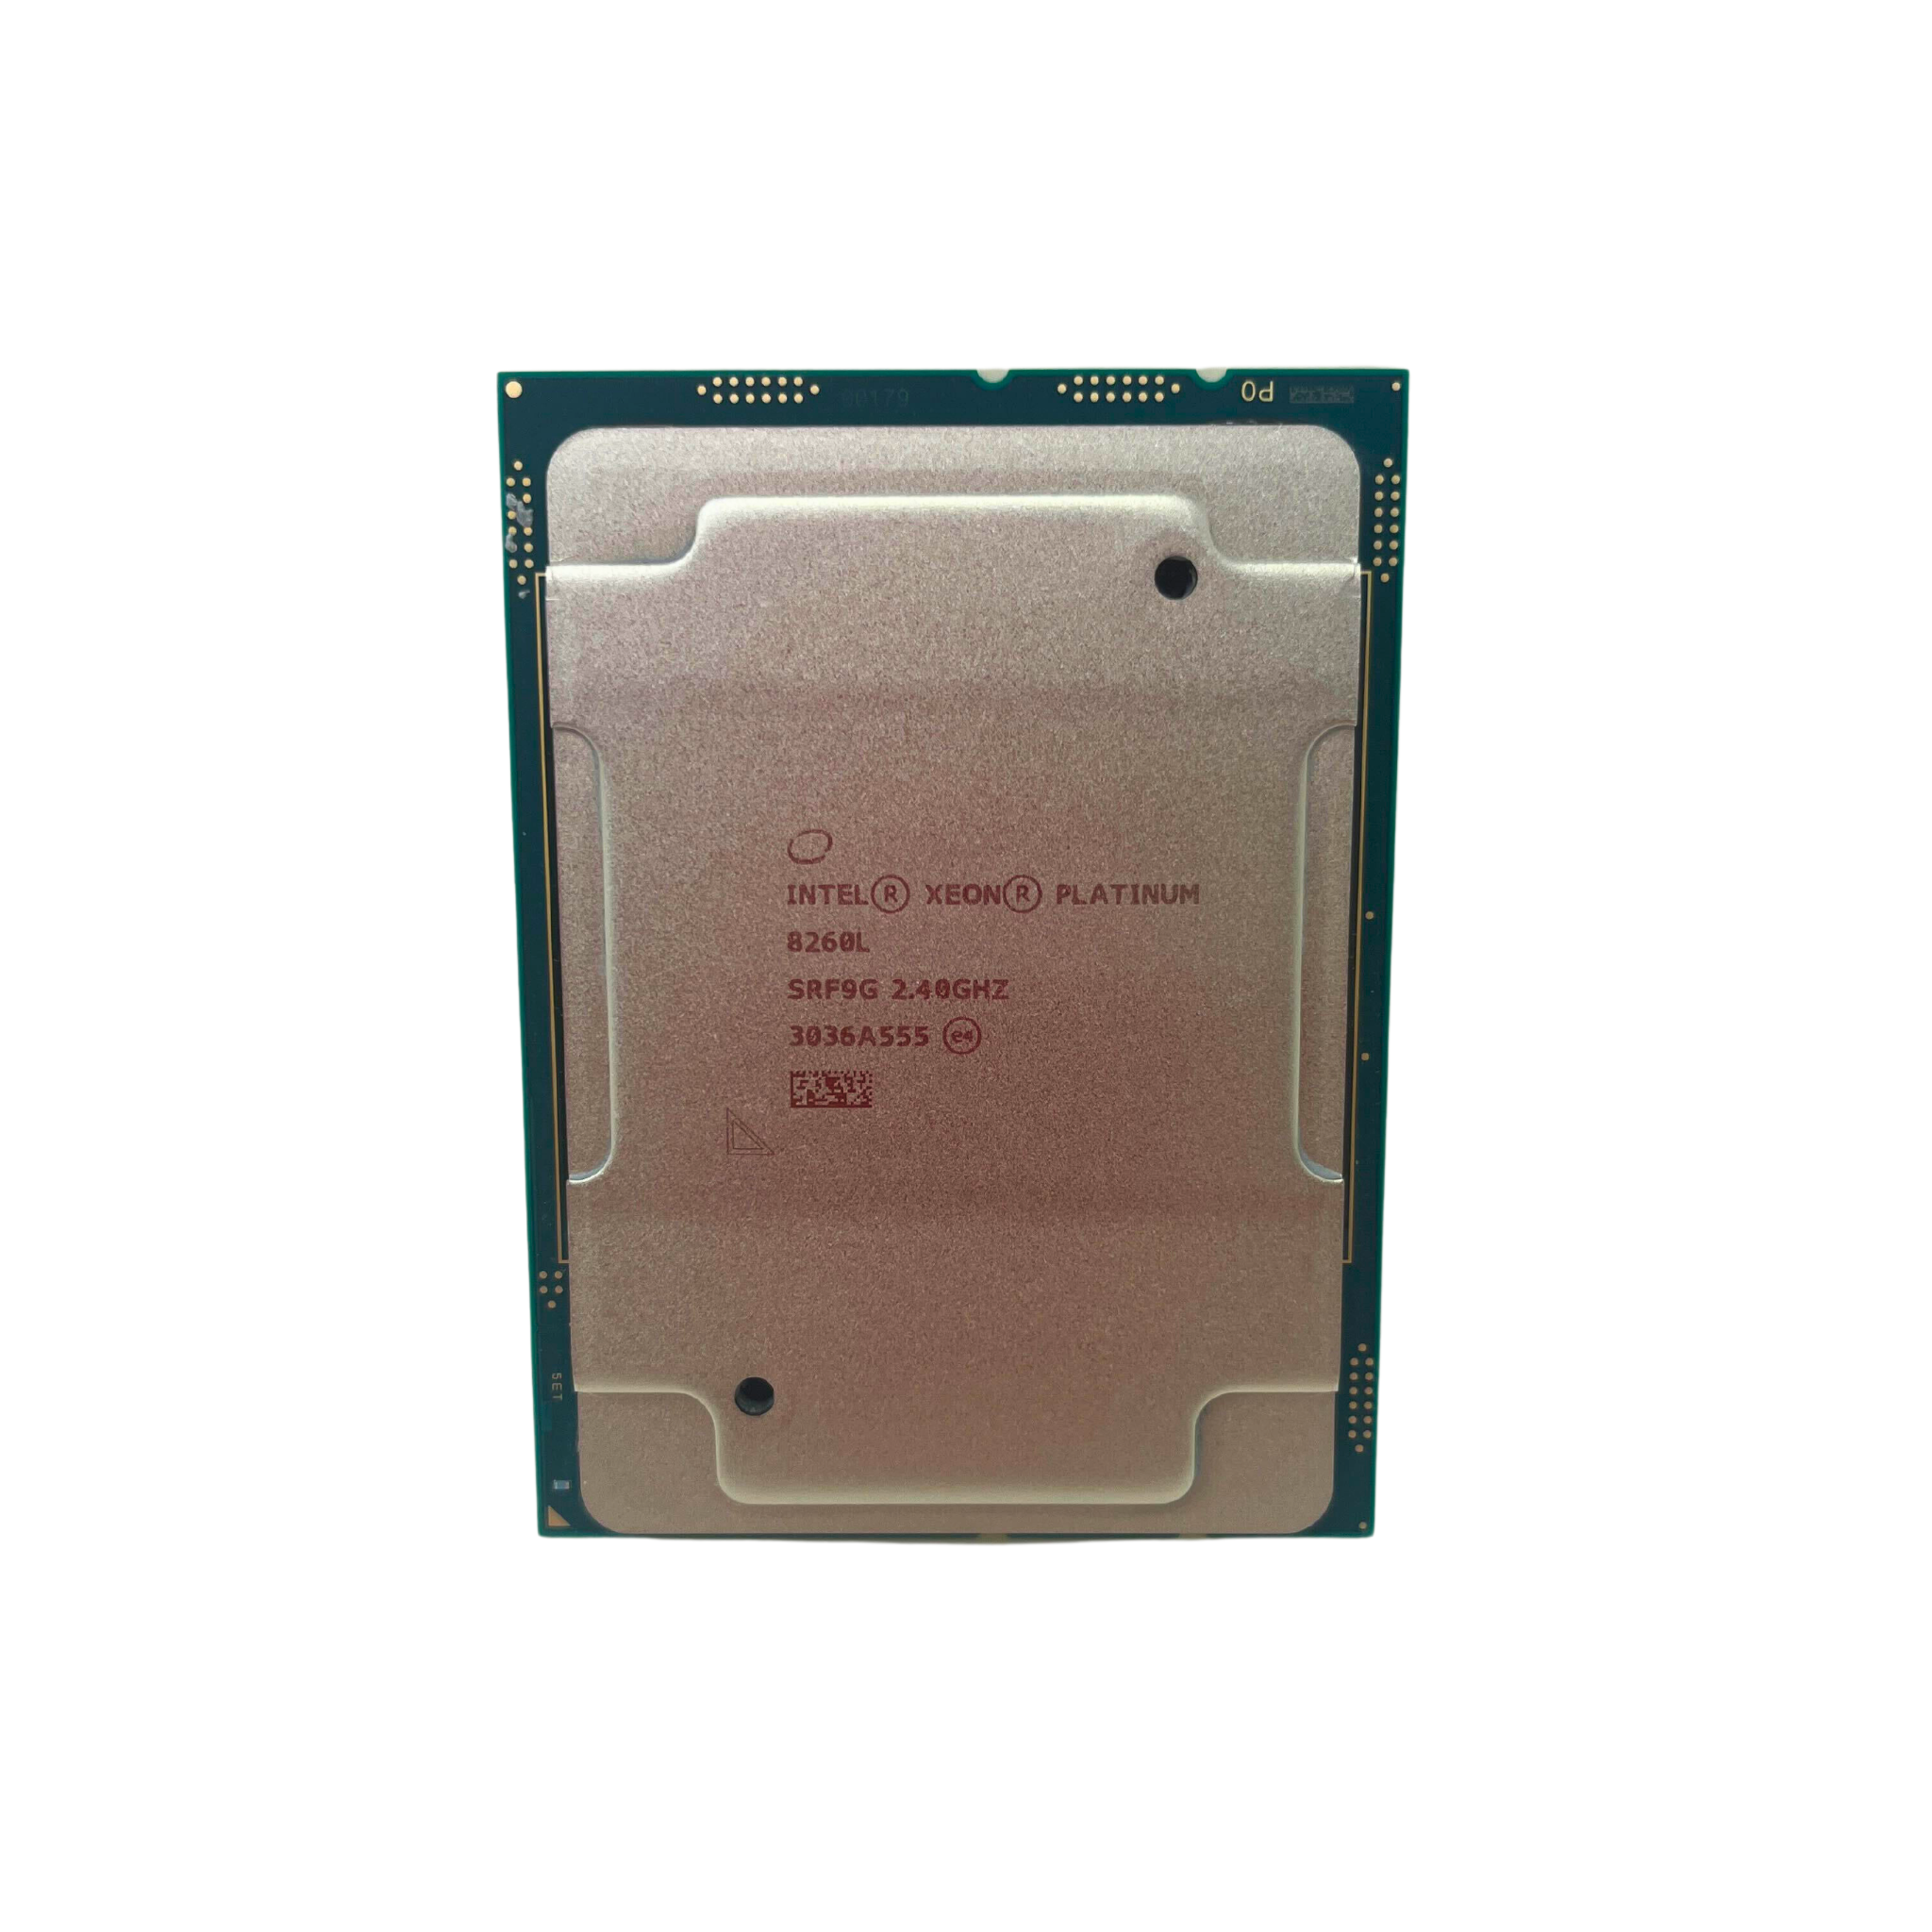 Intel Xeon Platinum 8260L  24 Core 2.40GHz 35.75MB L3 Cache 165W LGA3647 Processor (Intel Platinum 8260L)